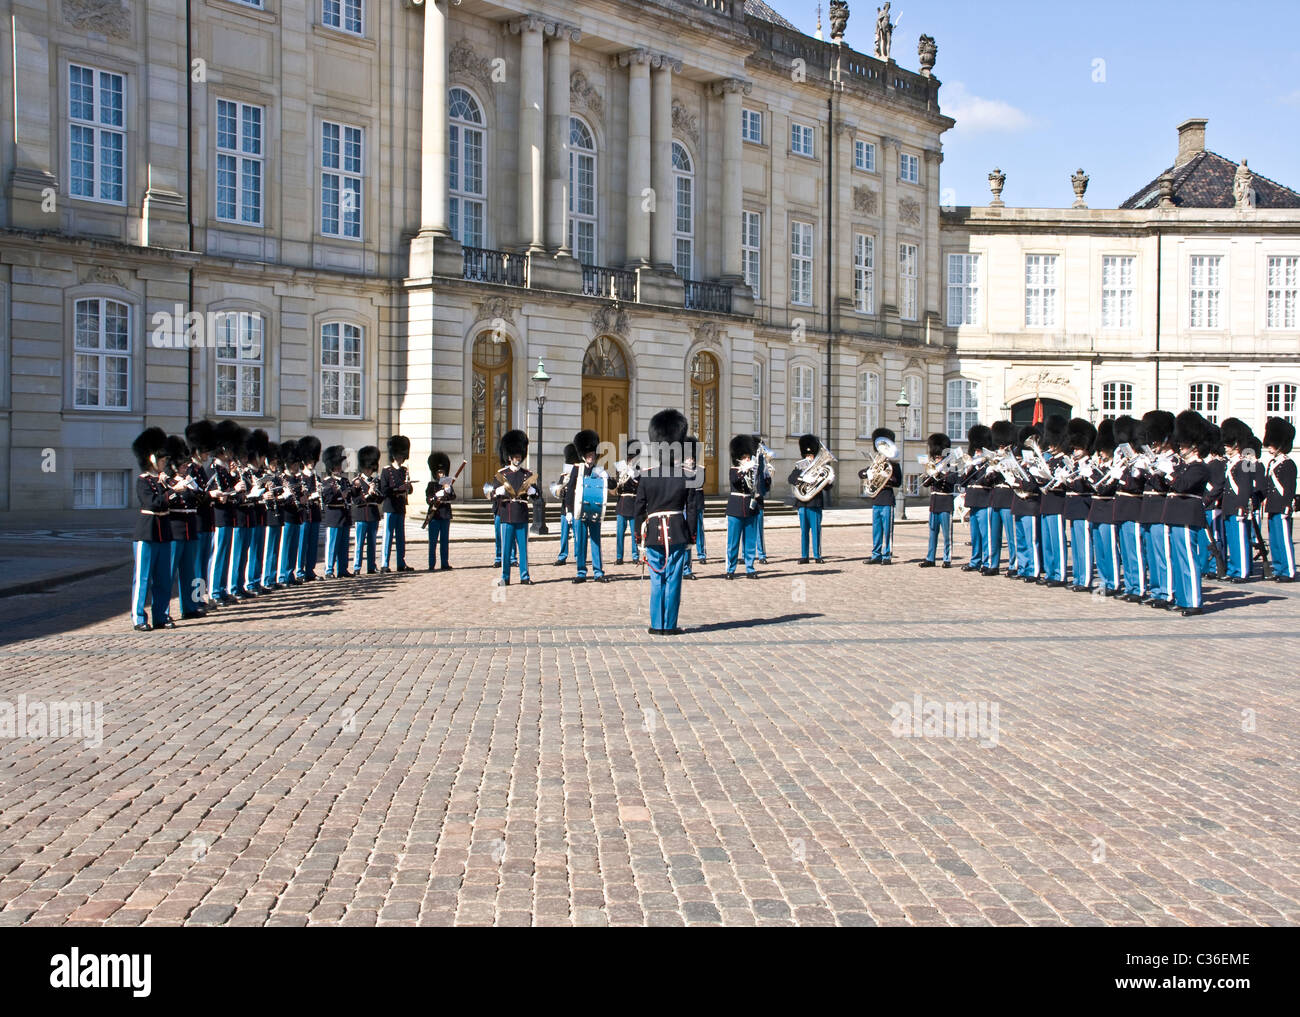 La vie royale danoise guards band jouant dans la place d'Amalienborg Copenhagen Danemark Scandinavie Banque D'Images